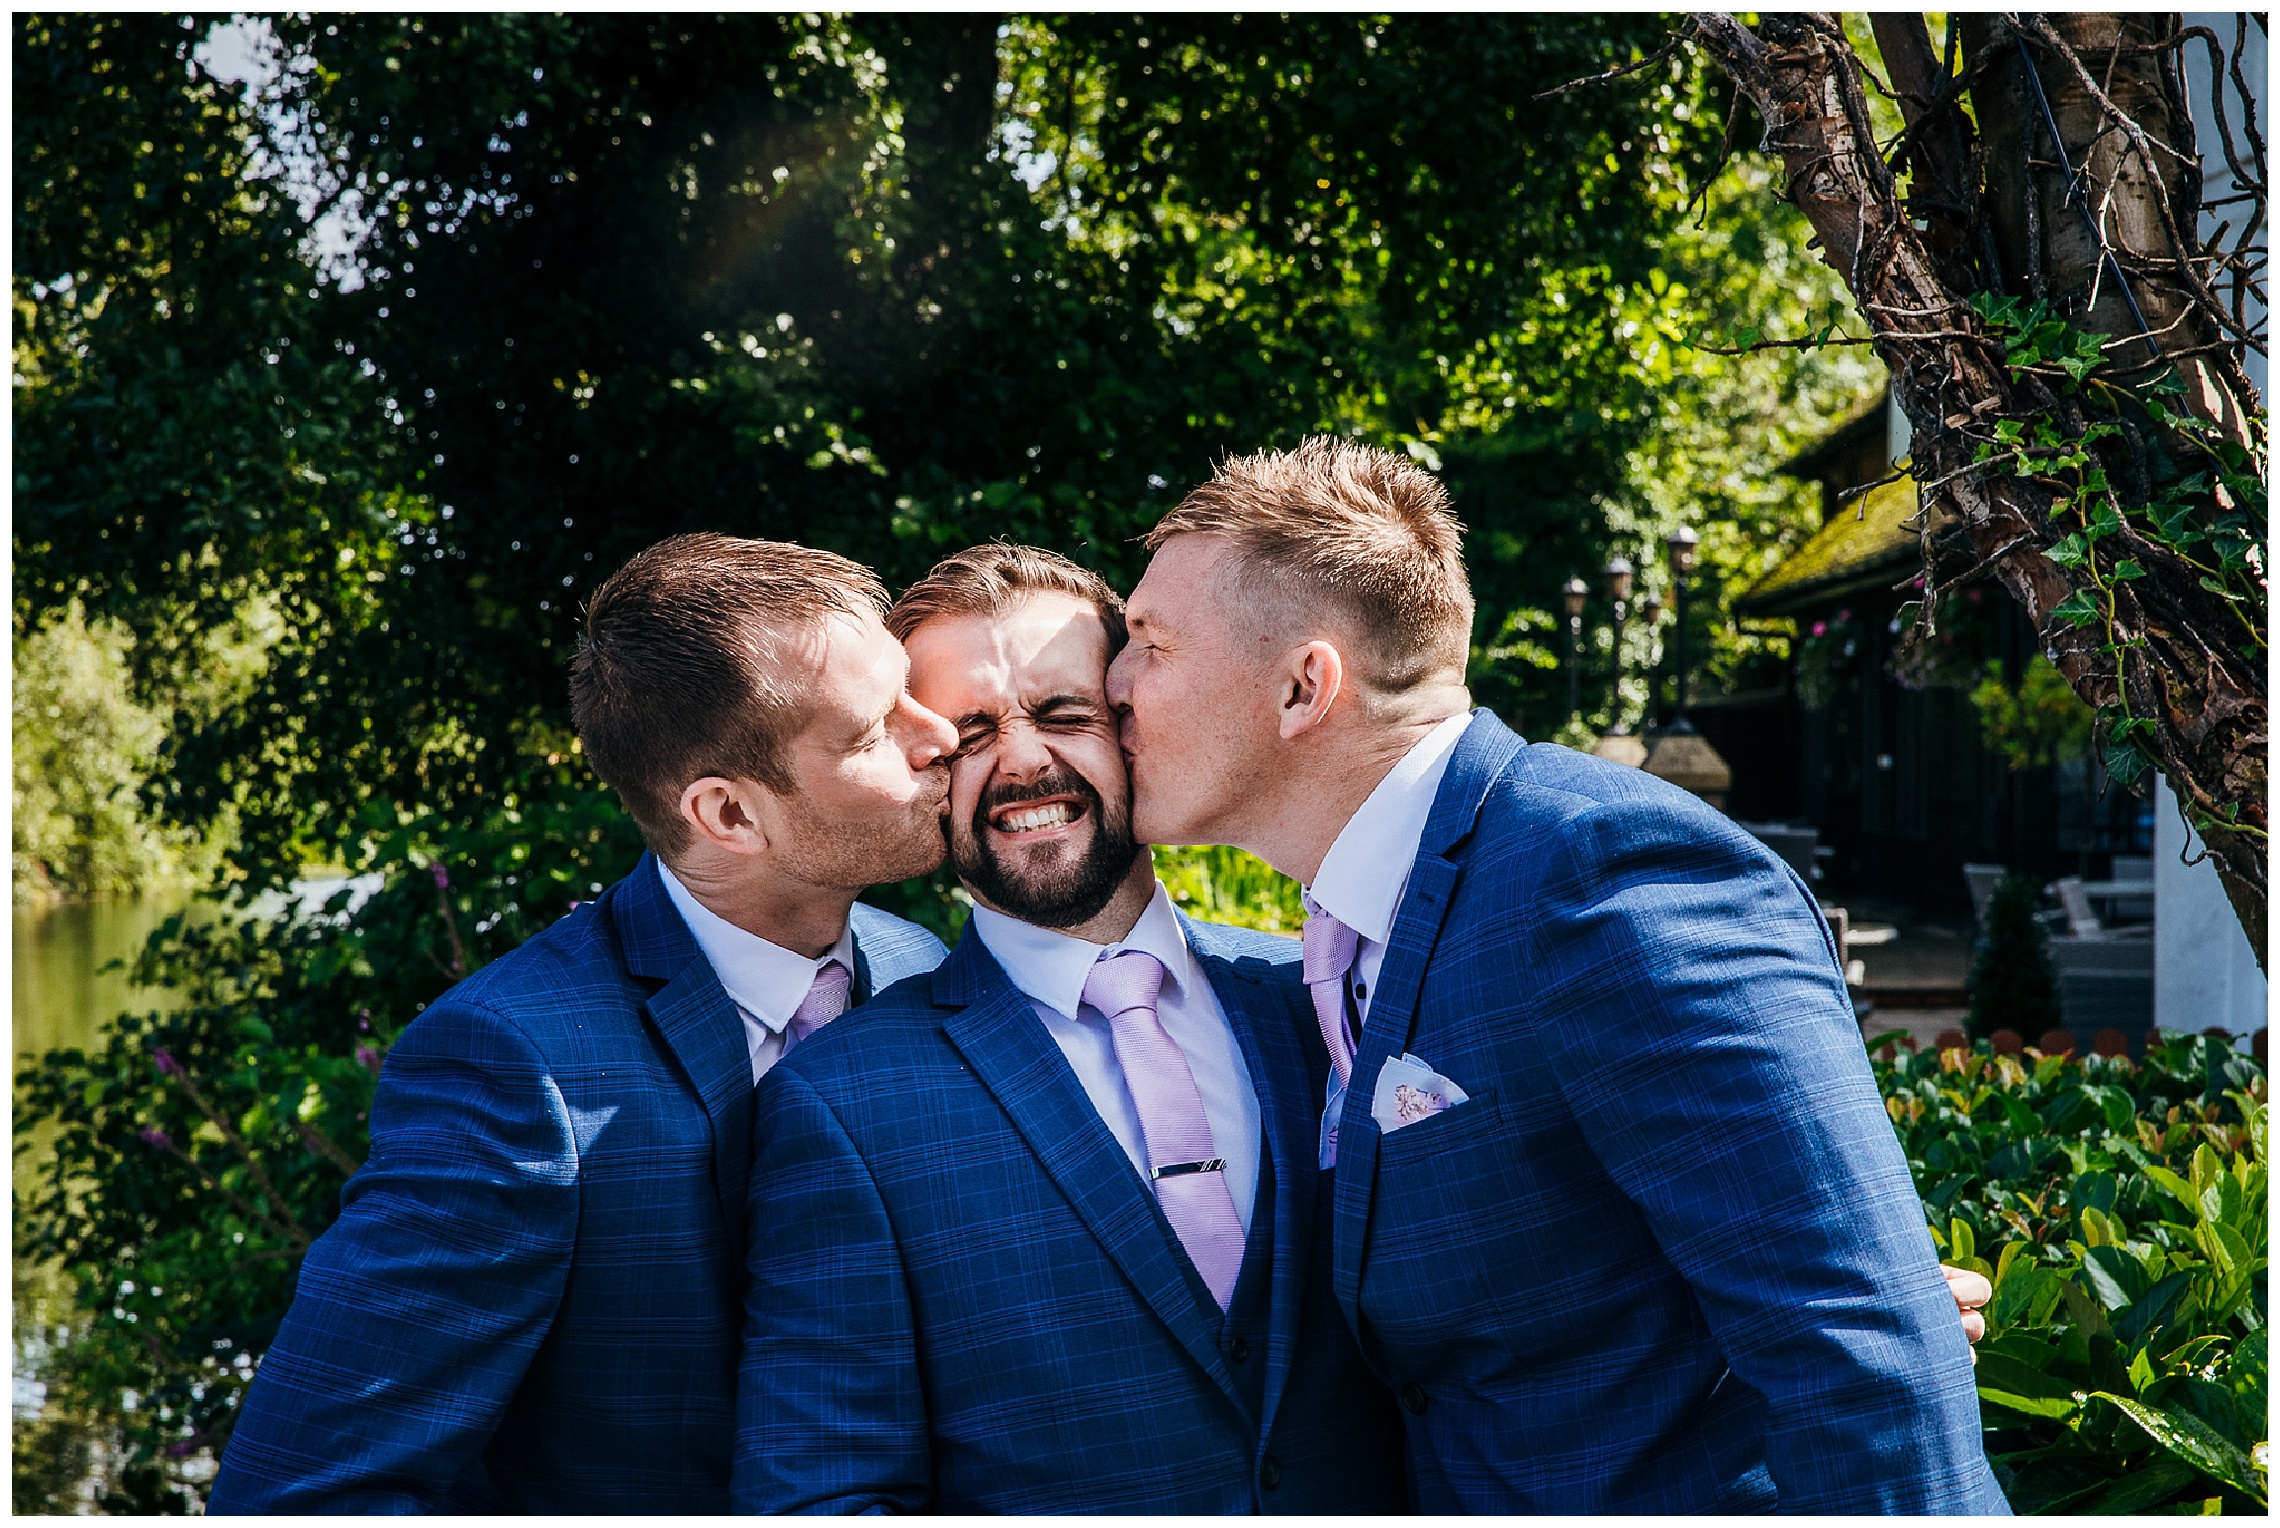 groom being kissed on cheek by groomsmen in blue suits